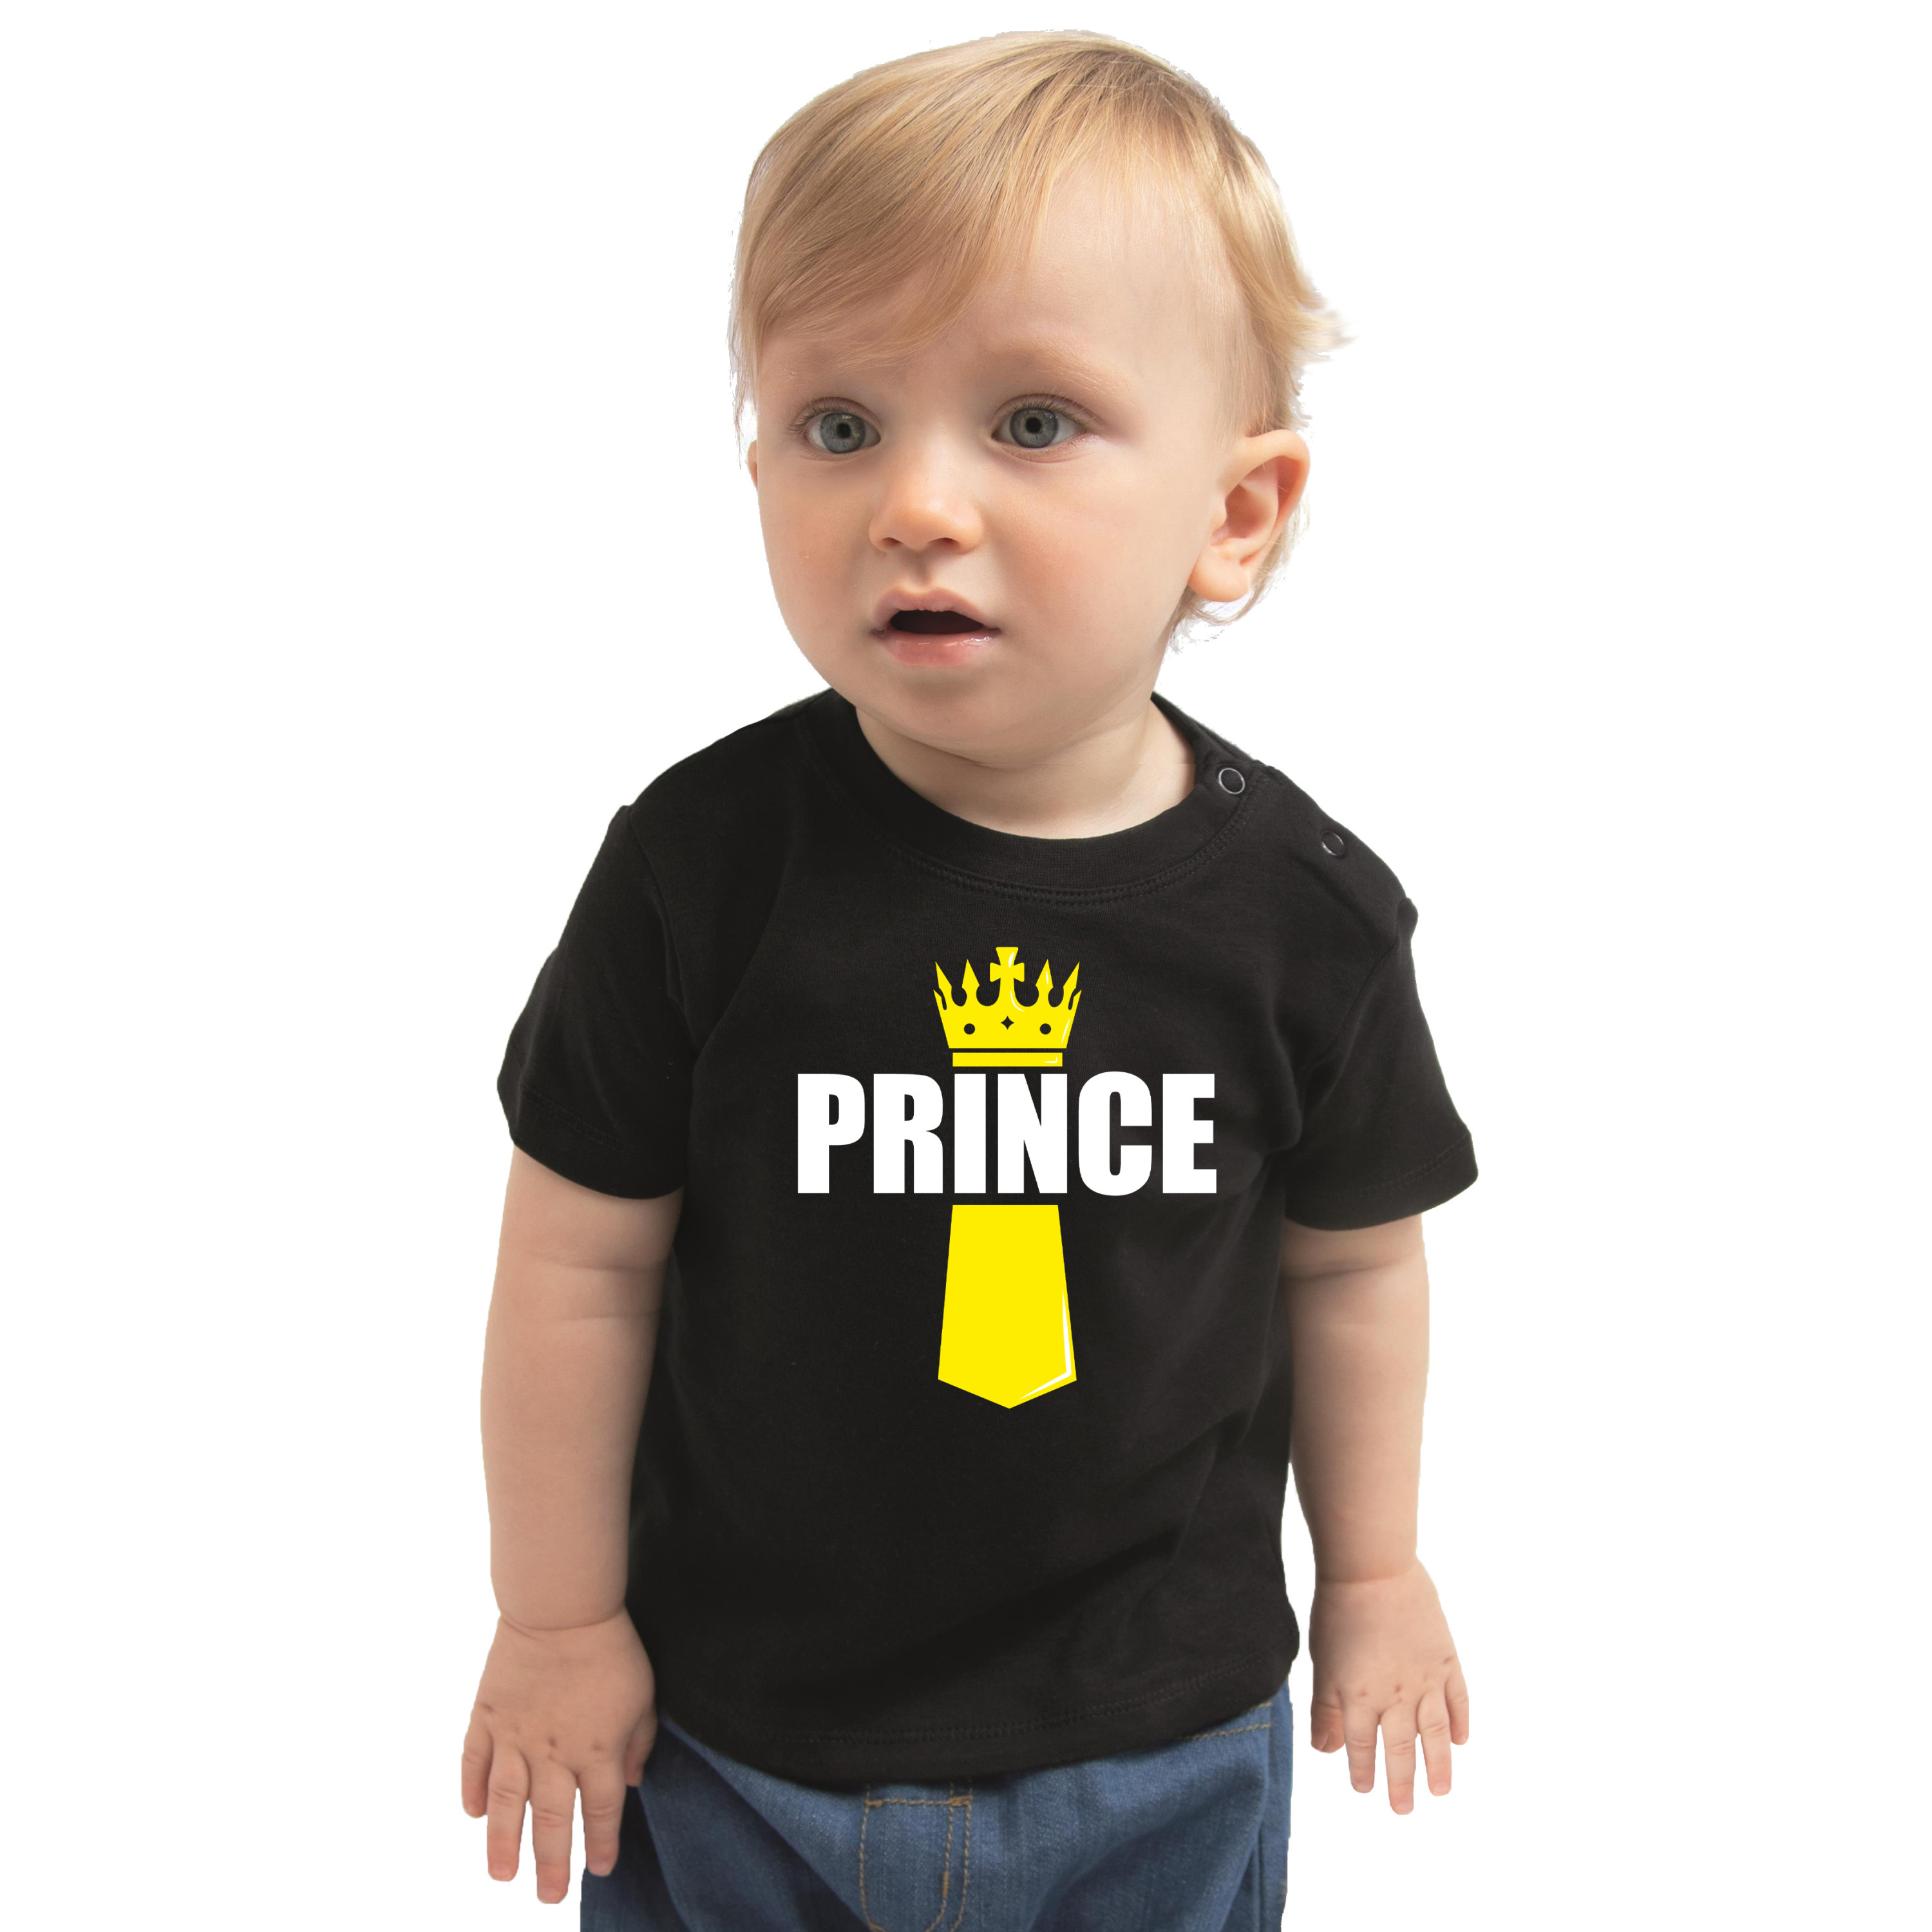 Koningsdag t-shirt Prince met kroontje zwart voor babys 62 (1-3 maanden) -